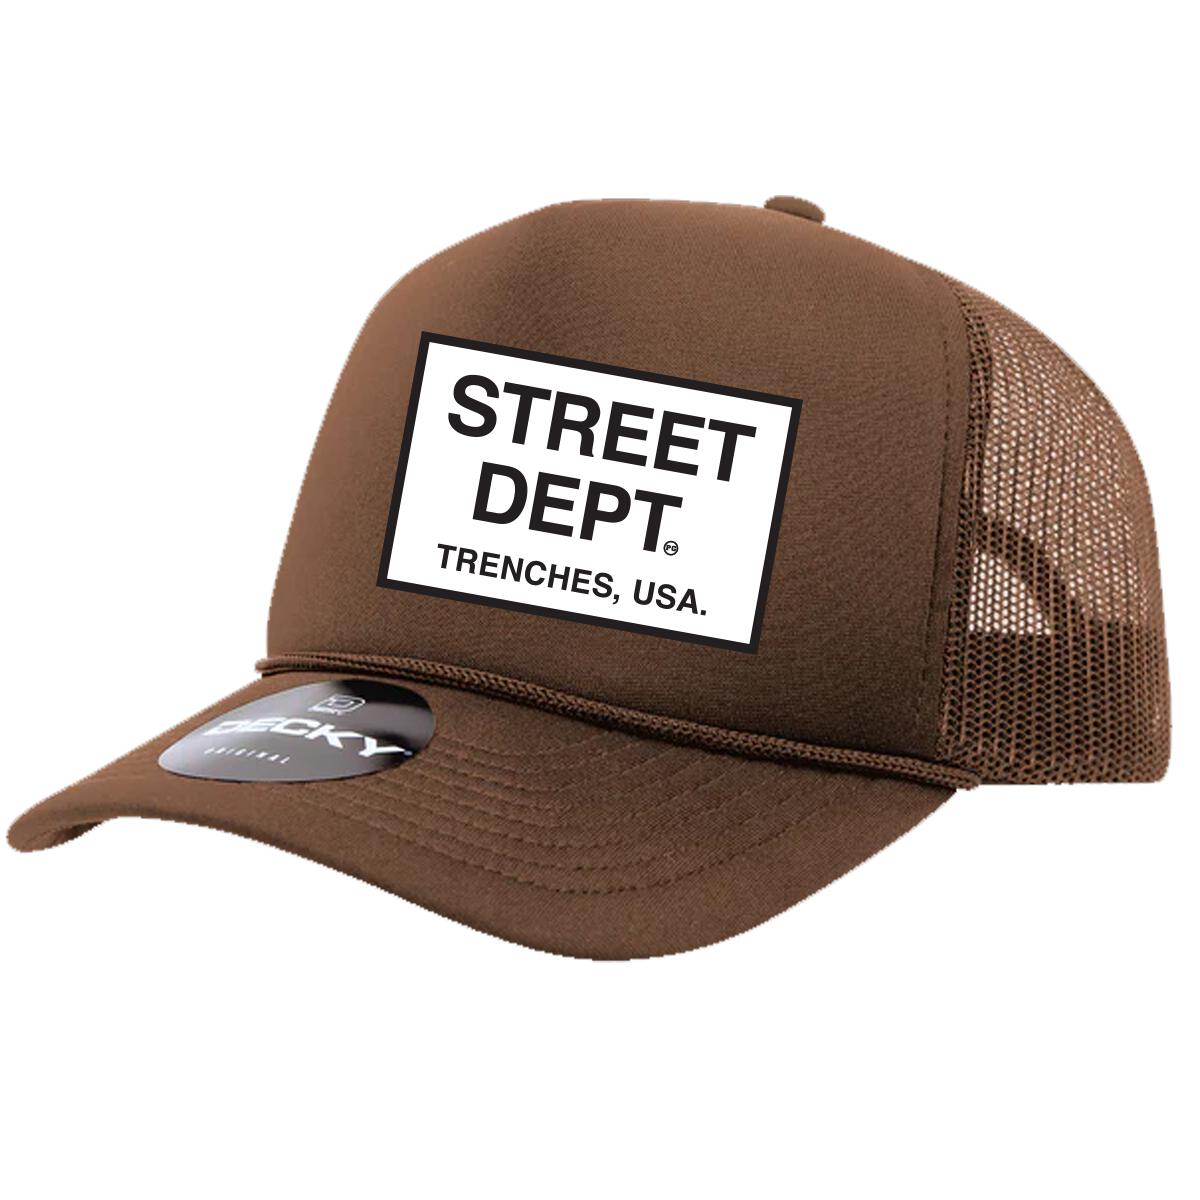 Street Department Trucker Hat Brown